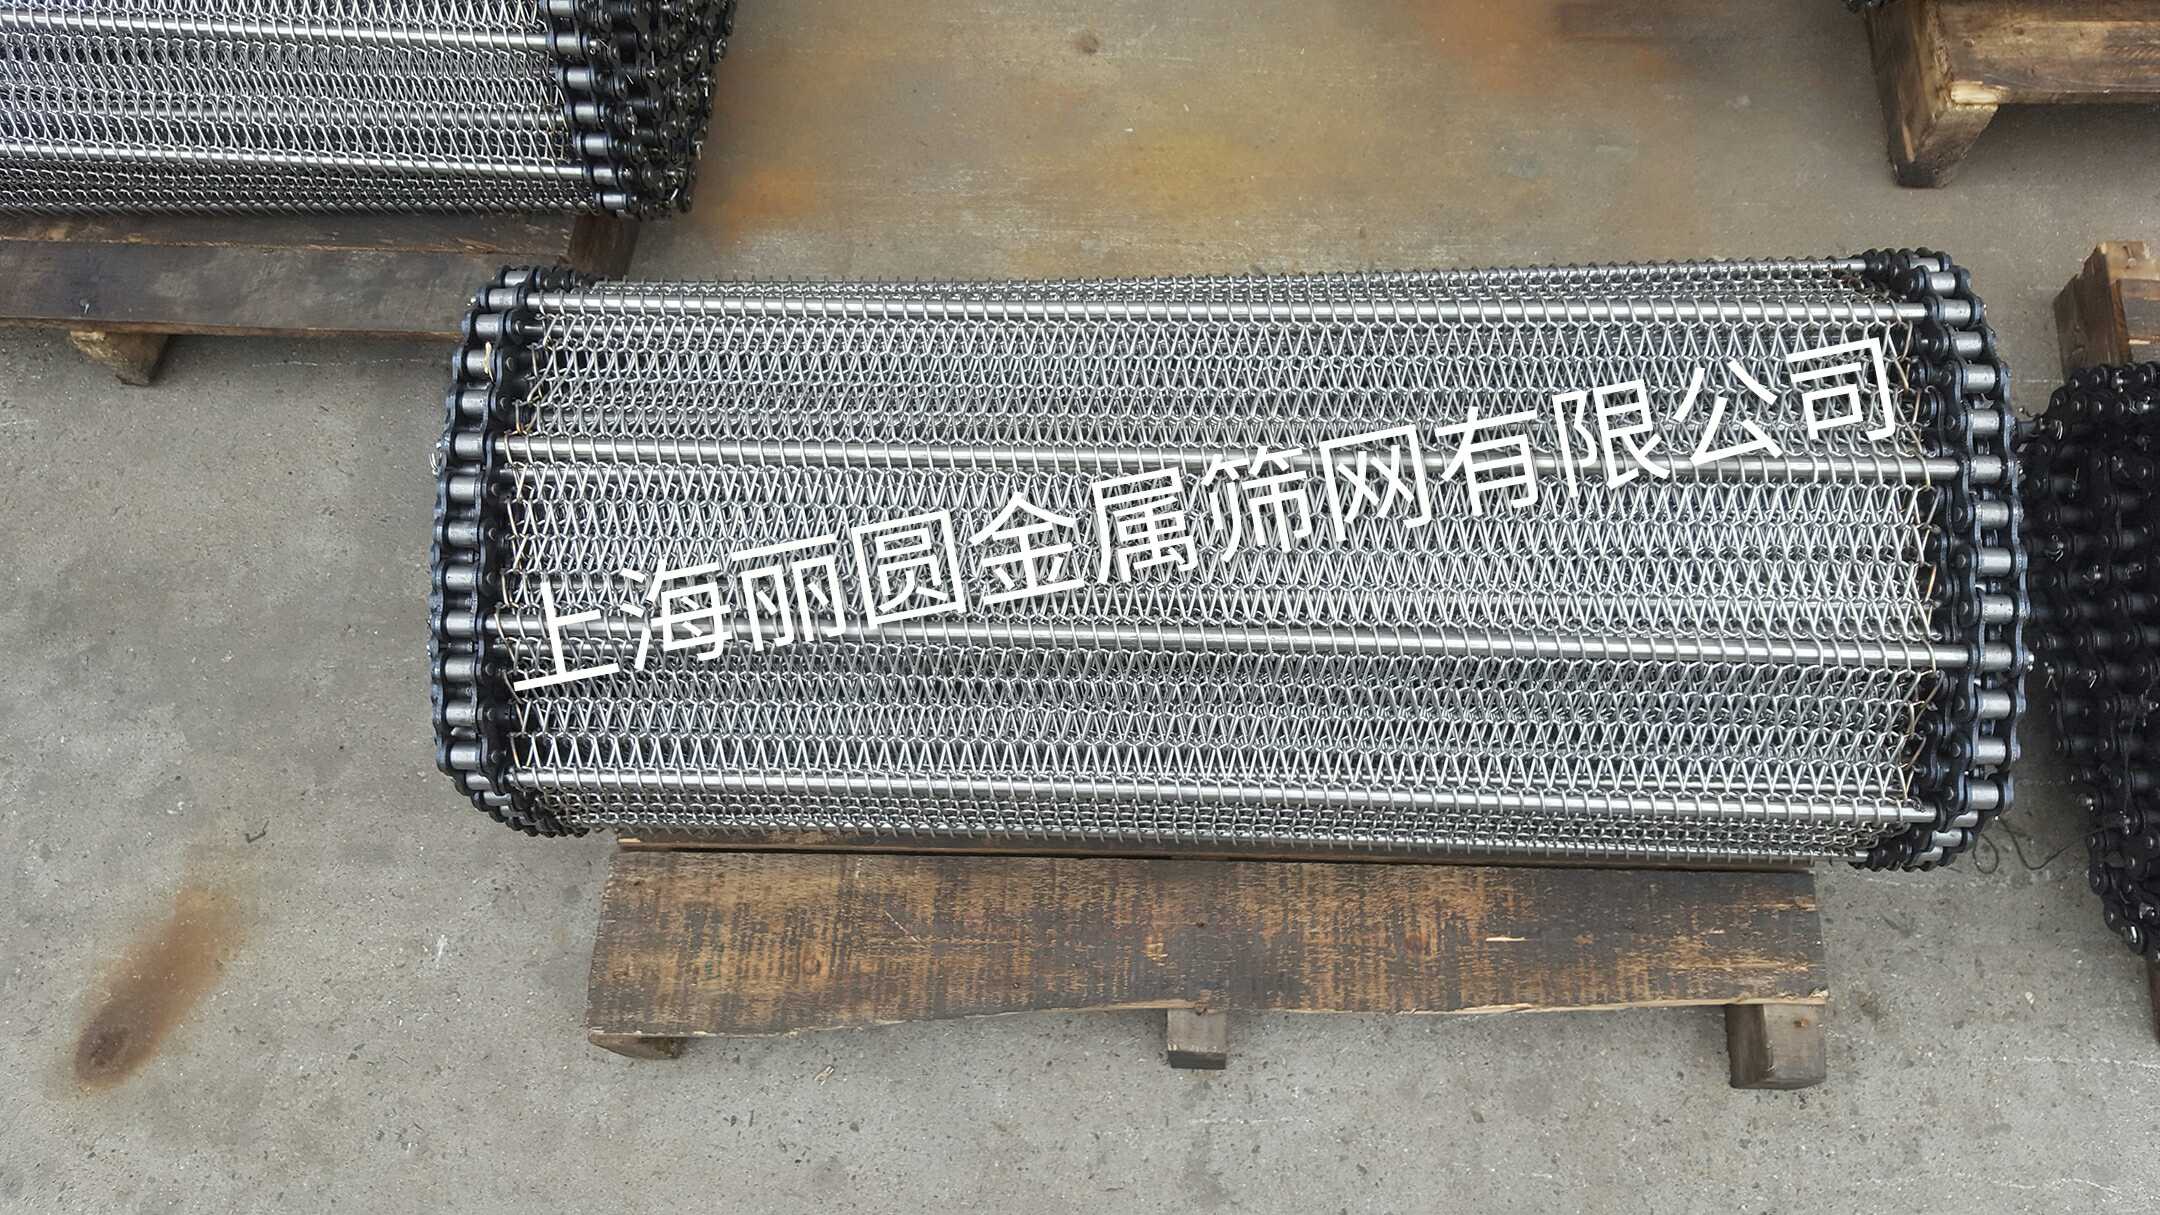 上海不锈钢输送网带、链条输送网带厂家  供应商  批发  价格 直销